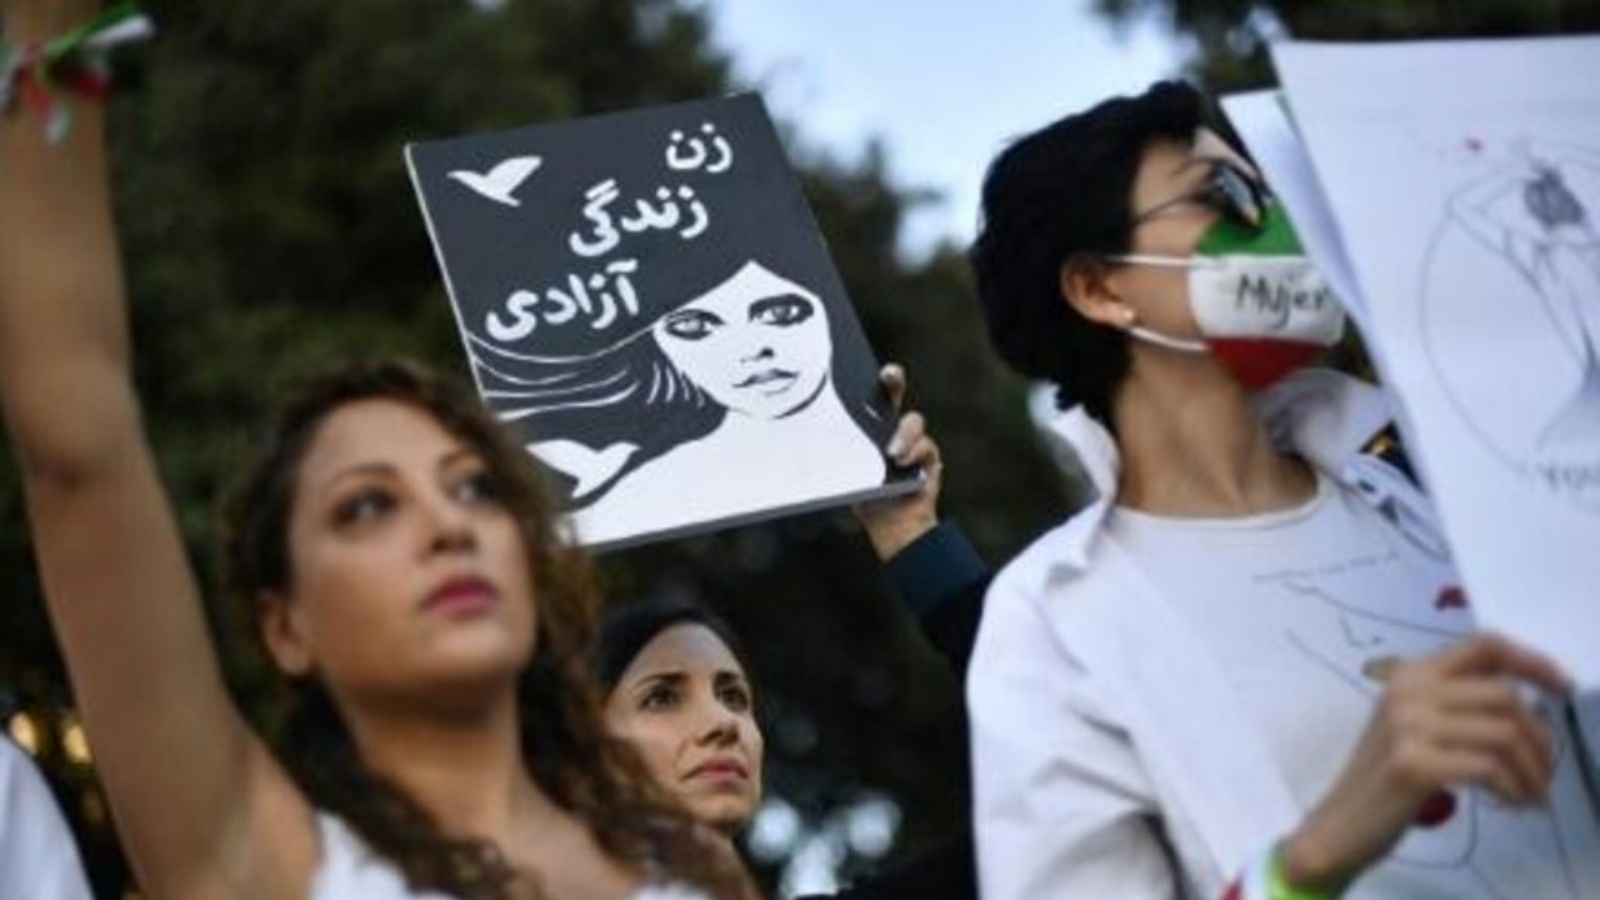 شابة ترفع لافتة كتب عليها بالفارسية 